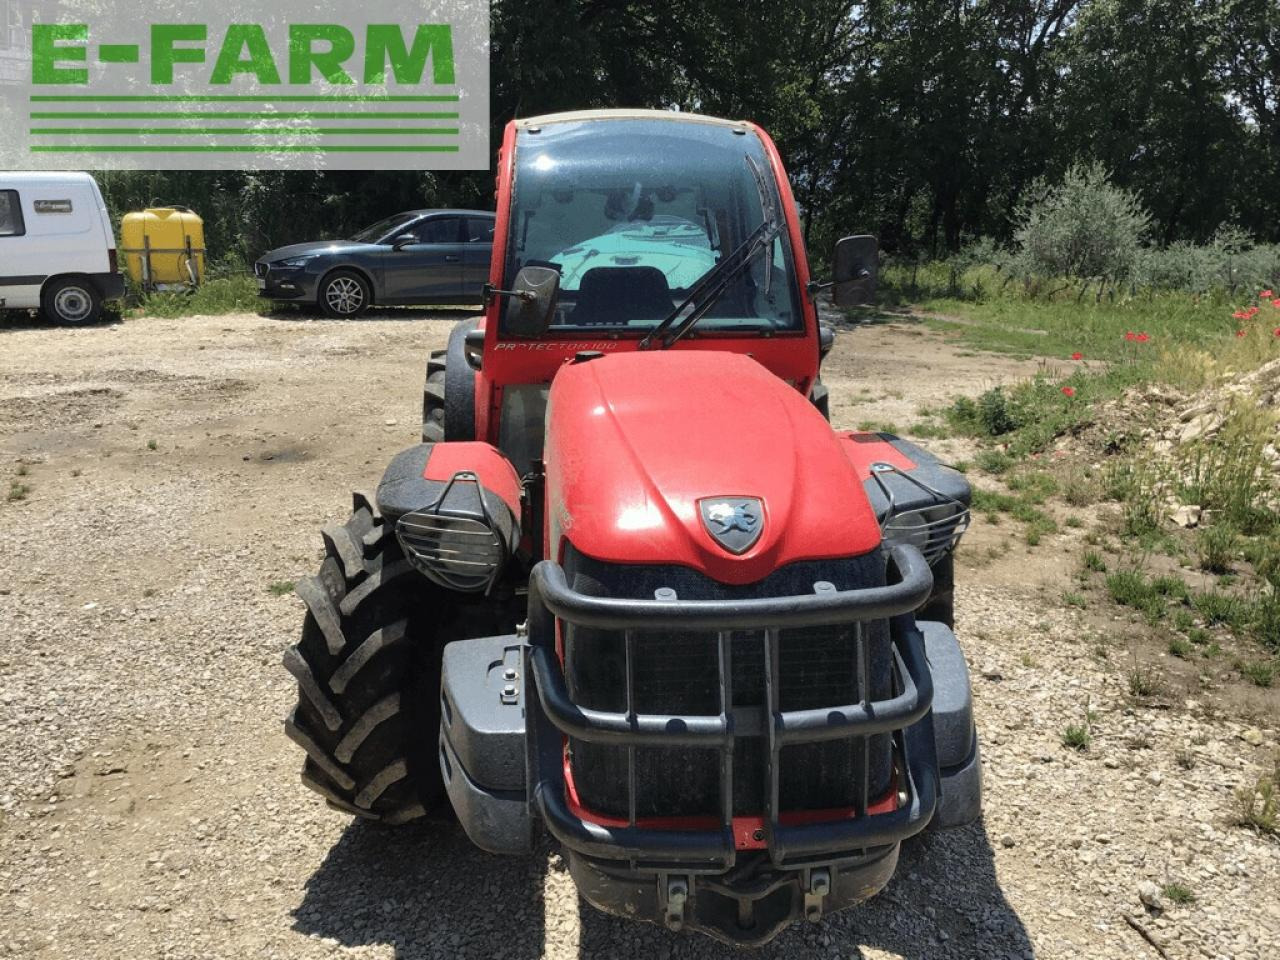 Farm tractor Carraro tgf 7800 s: picture 3